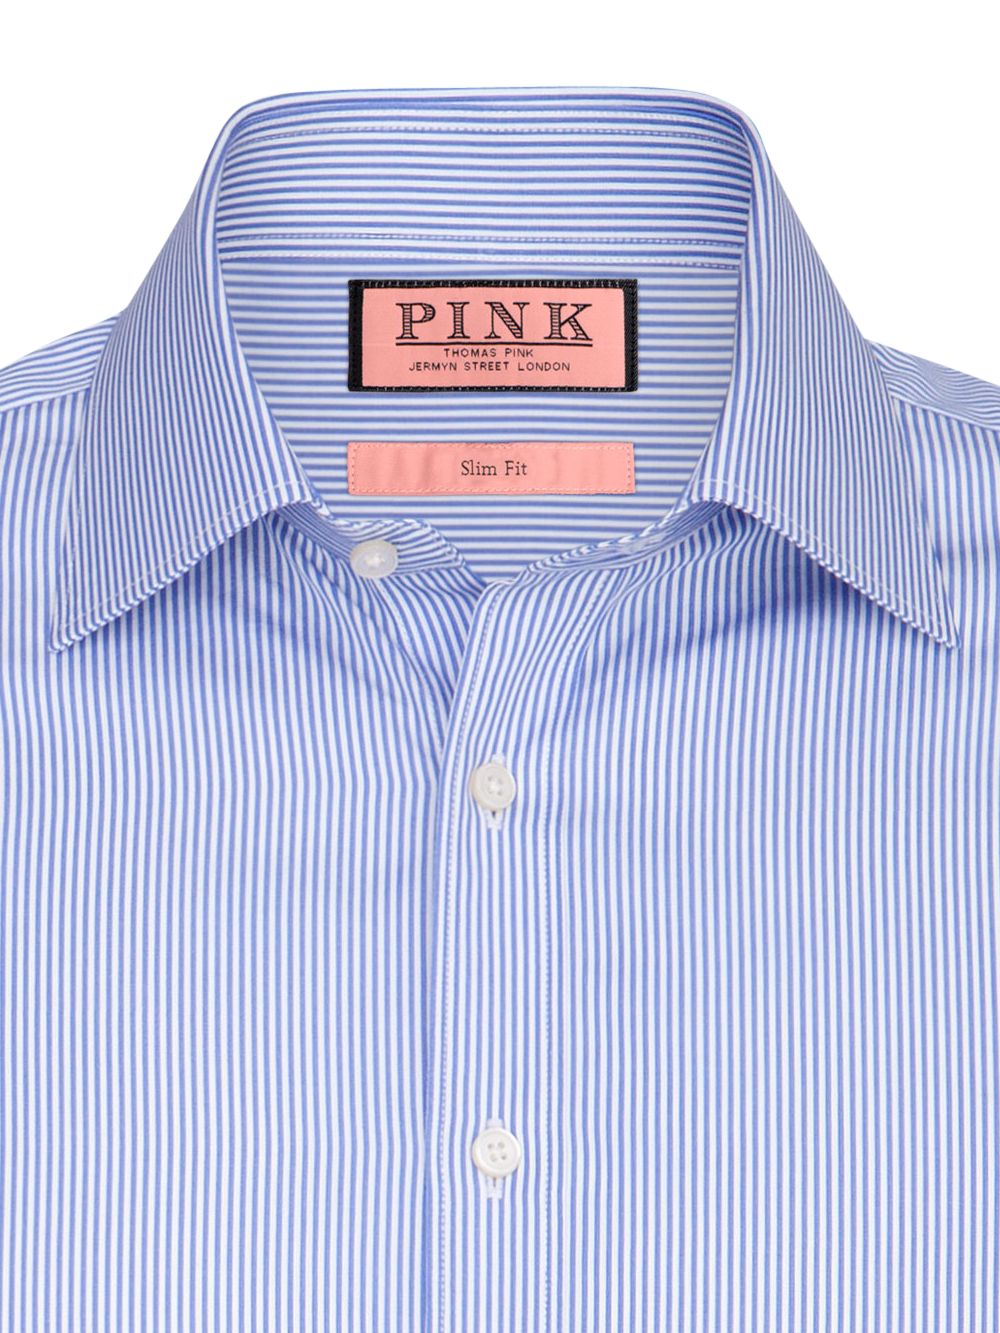 Thomas Pink Dress Shirts for Men